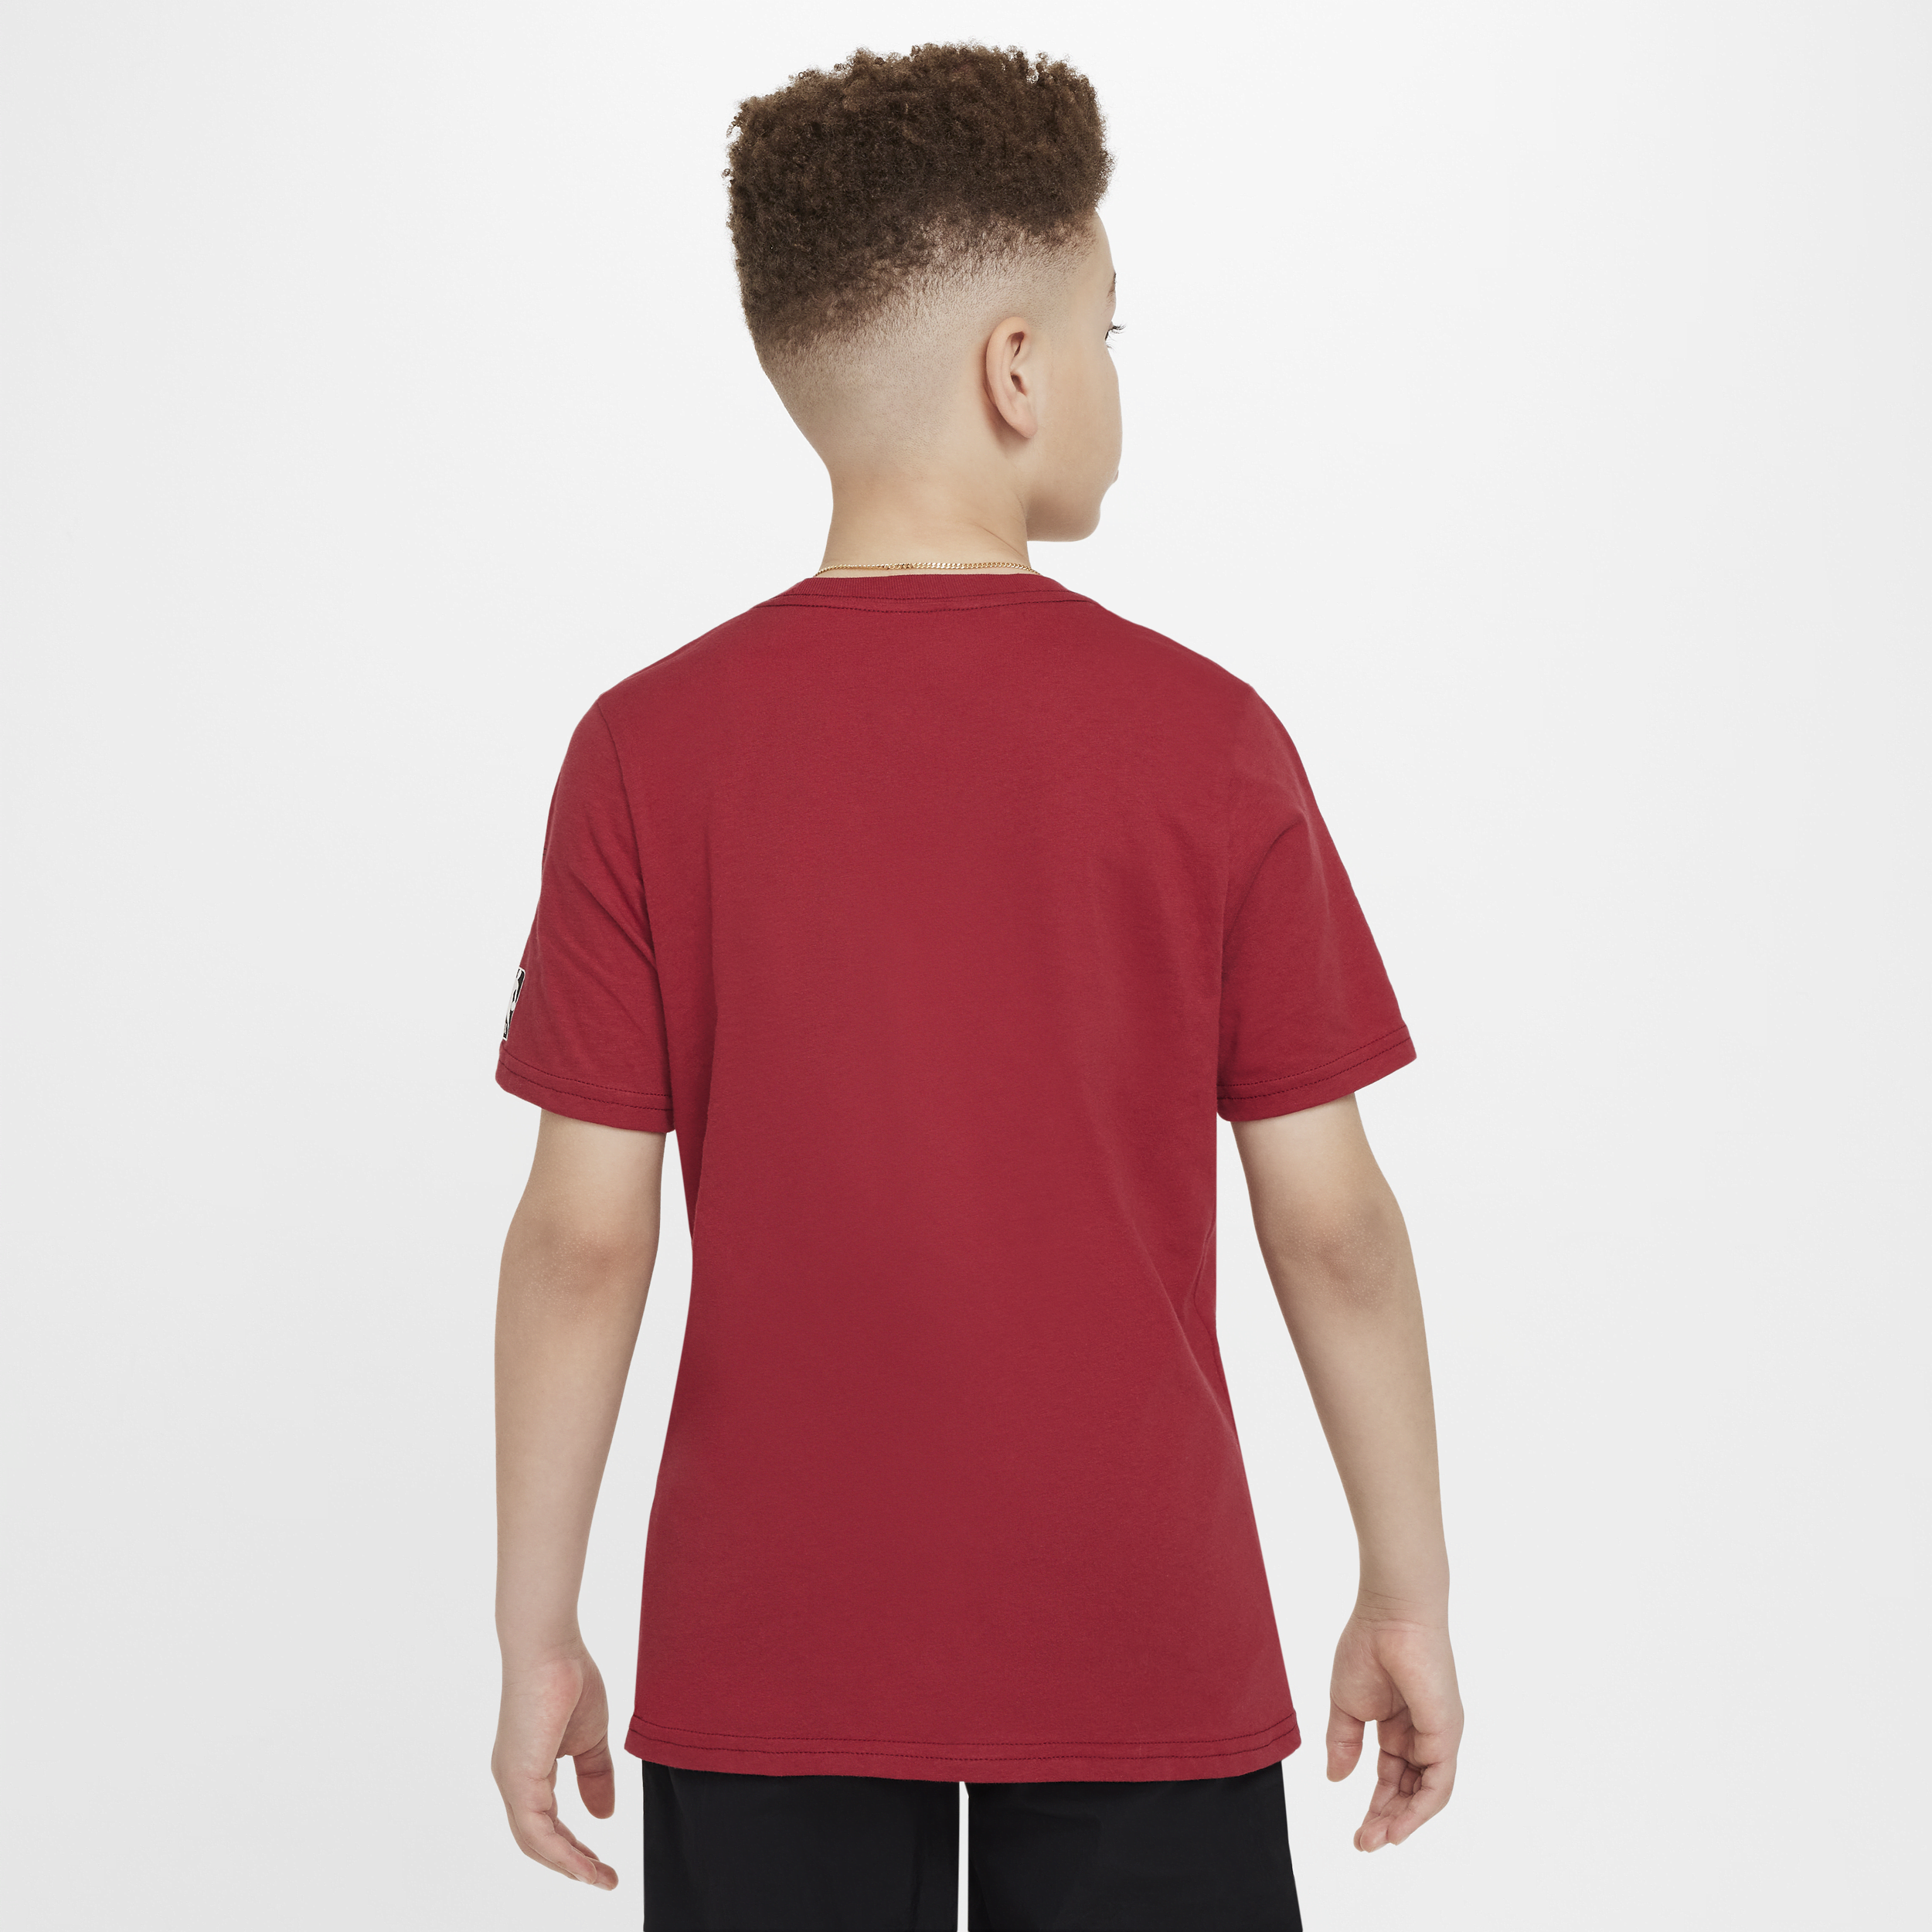 Nike Miami Heat Essential NBA-shirt voor jongens Rood